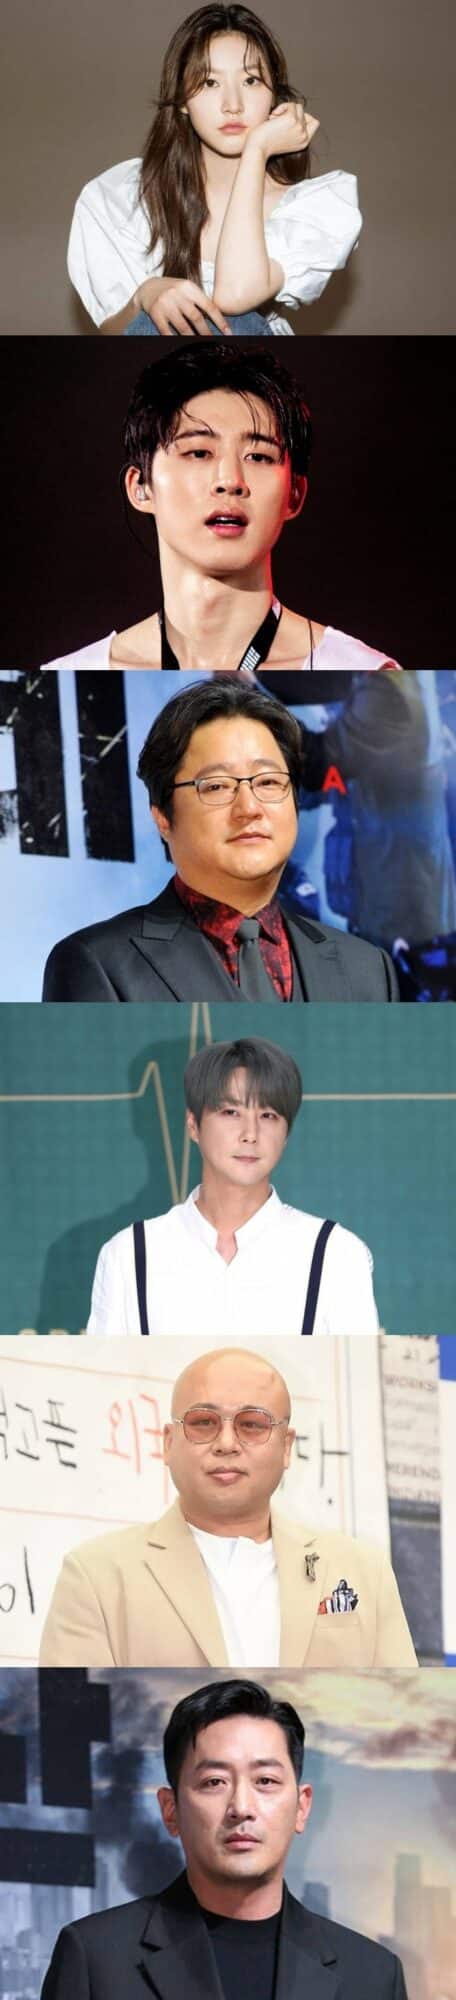 KBS запретил показывать в эфире 6 знаменитостей, которые были обвинены в употреблении наркотиков и вождении в нетрезвом виде